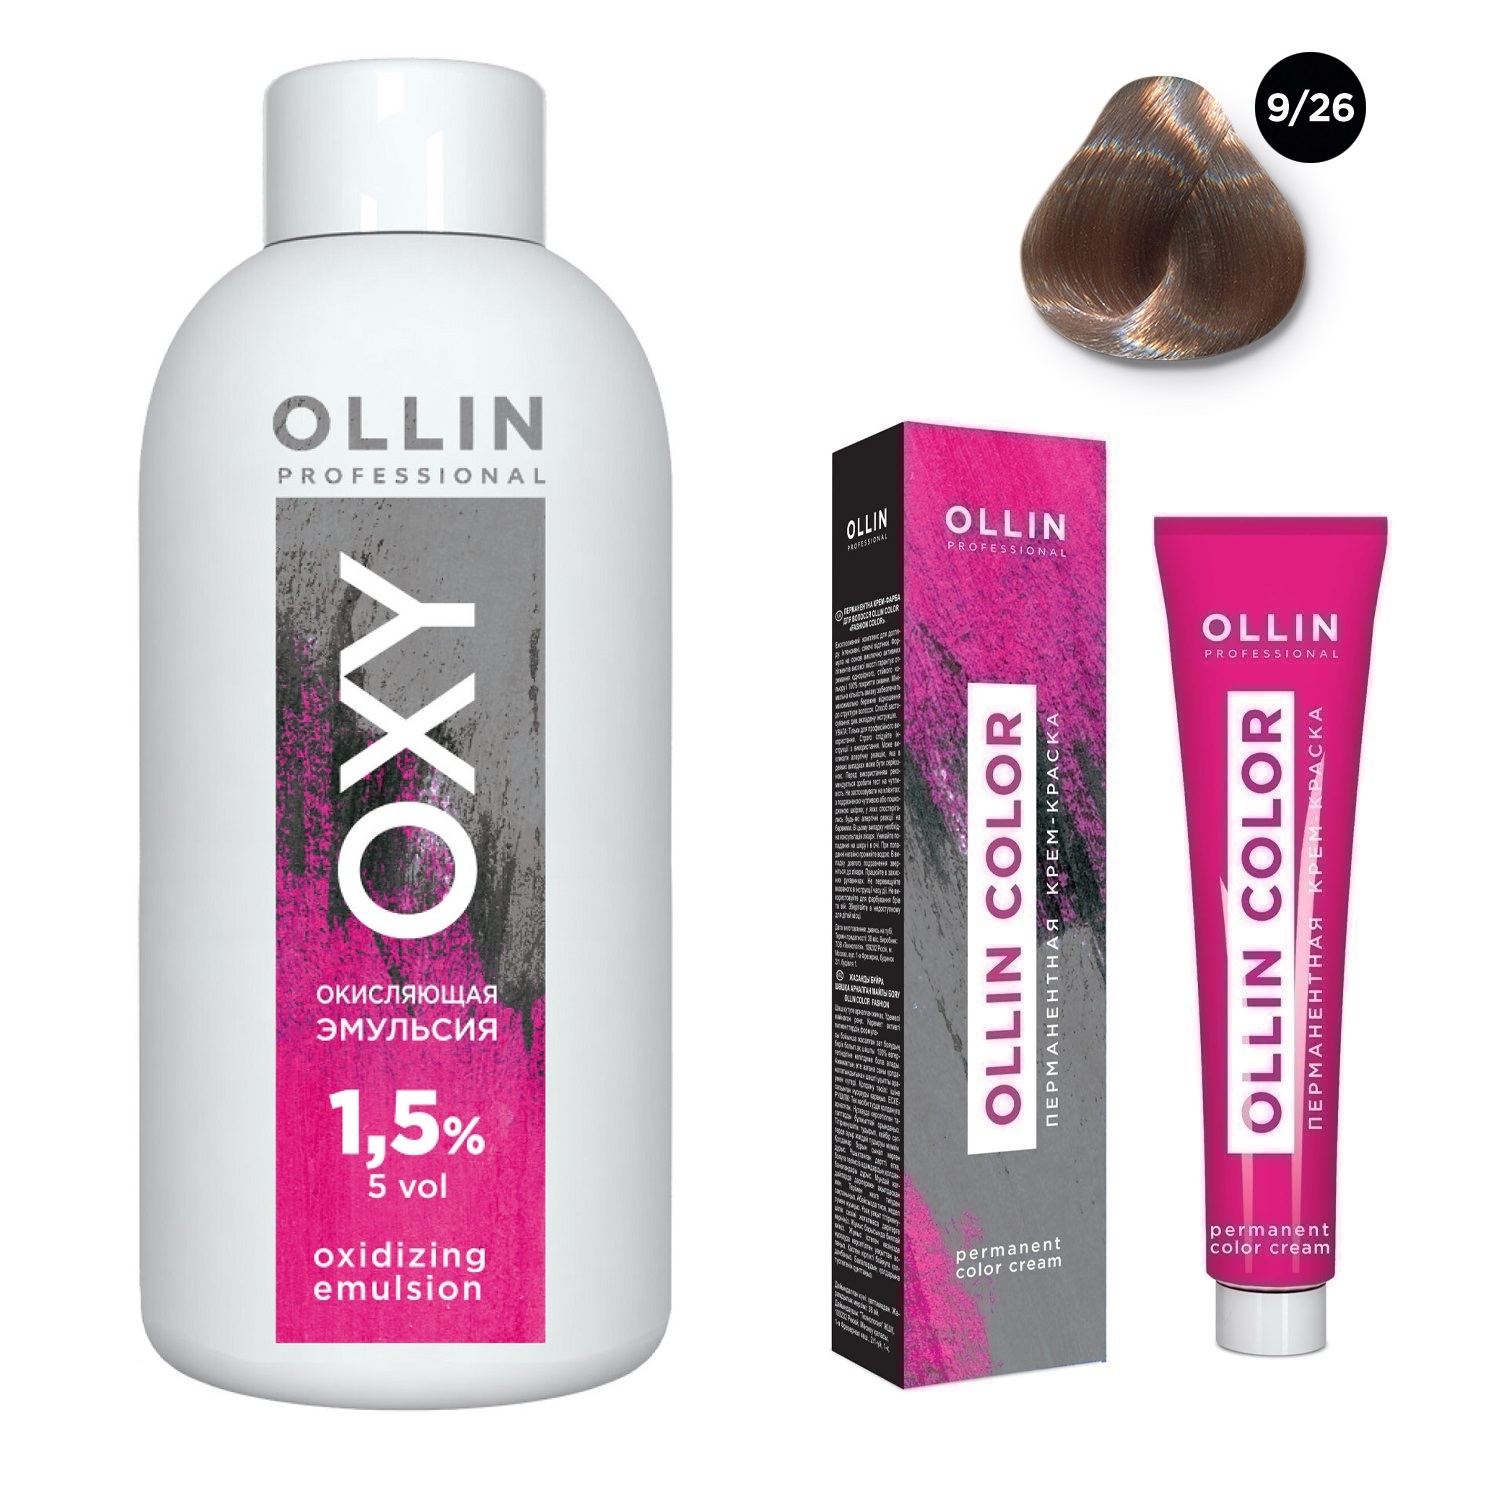 Ollin Professional Набор Перманентная крем-краска для волос Ollin Color оттенок 9/26 блондин розовый 100 мл + Окисляющая эмульсия Oxy 1,5% 150 мл (Ollin Professional, Ollin Color) окисляющая эмульсия oxy 9% 1000 мл